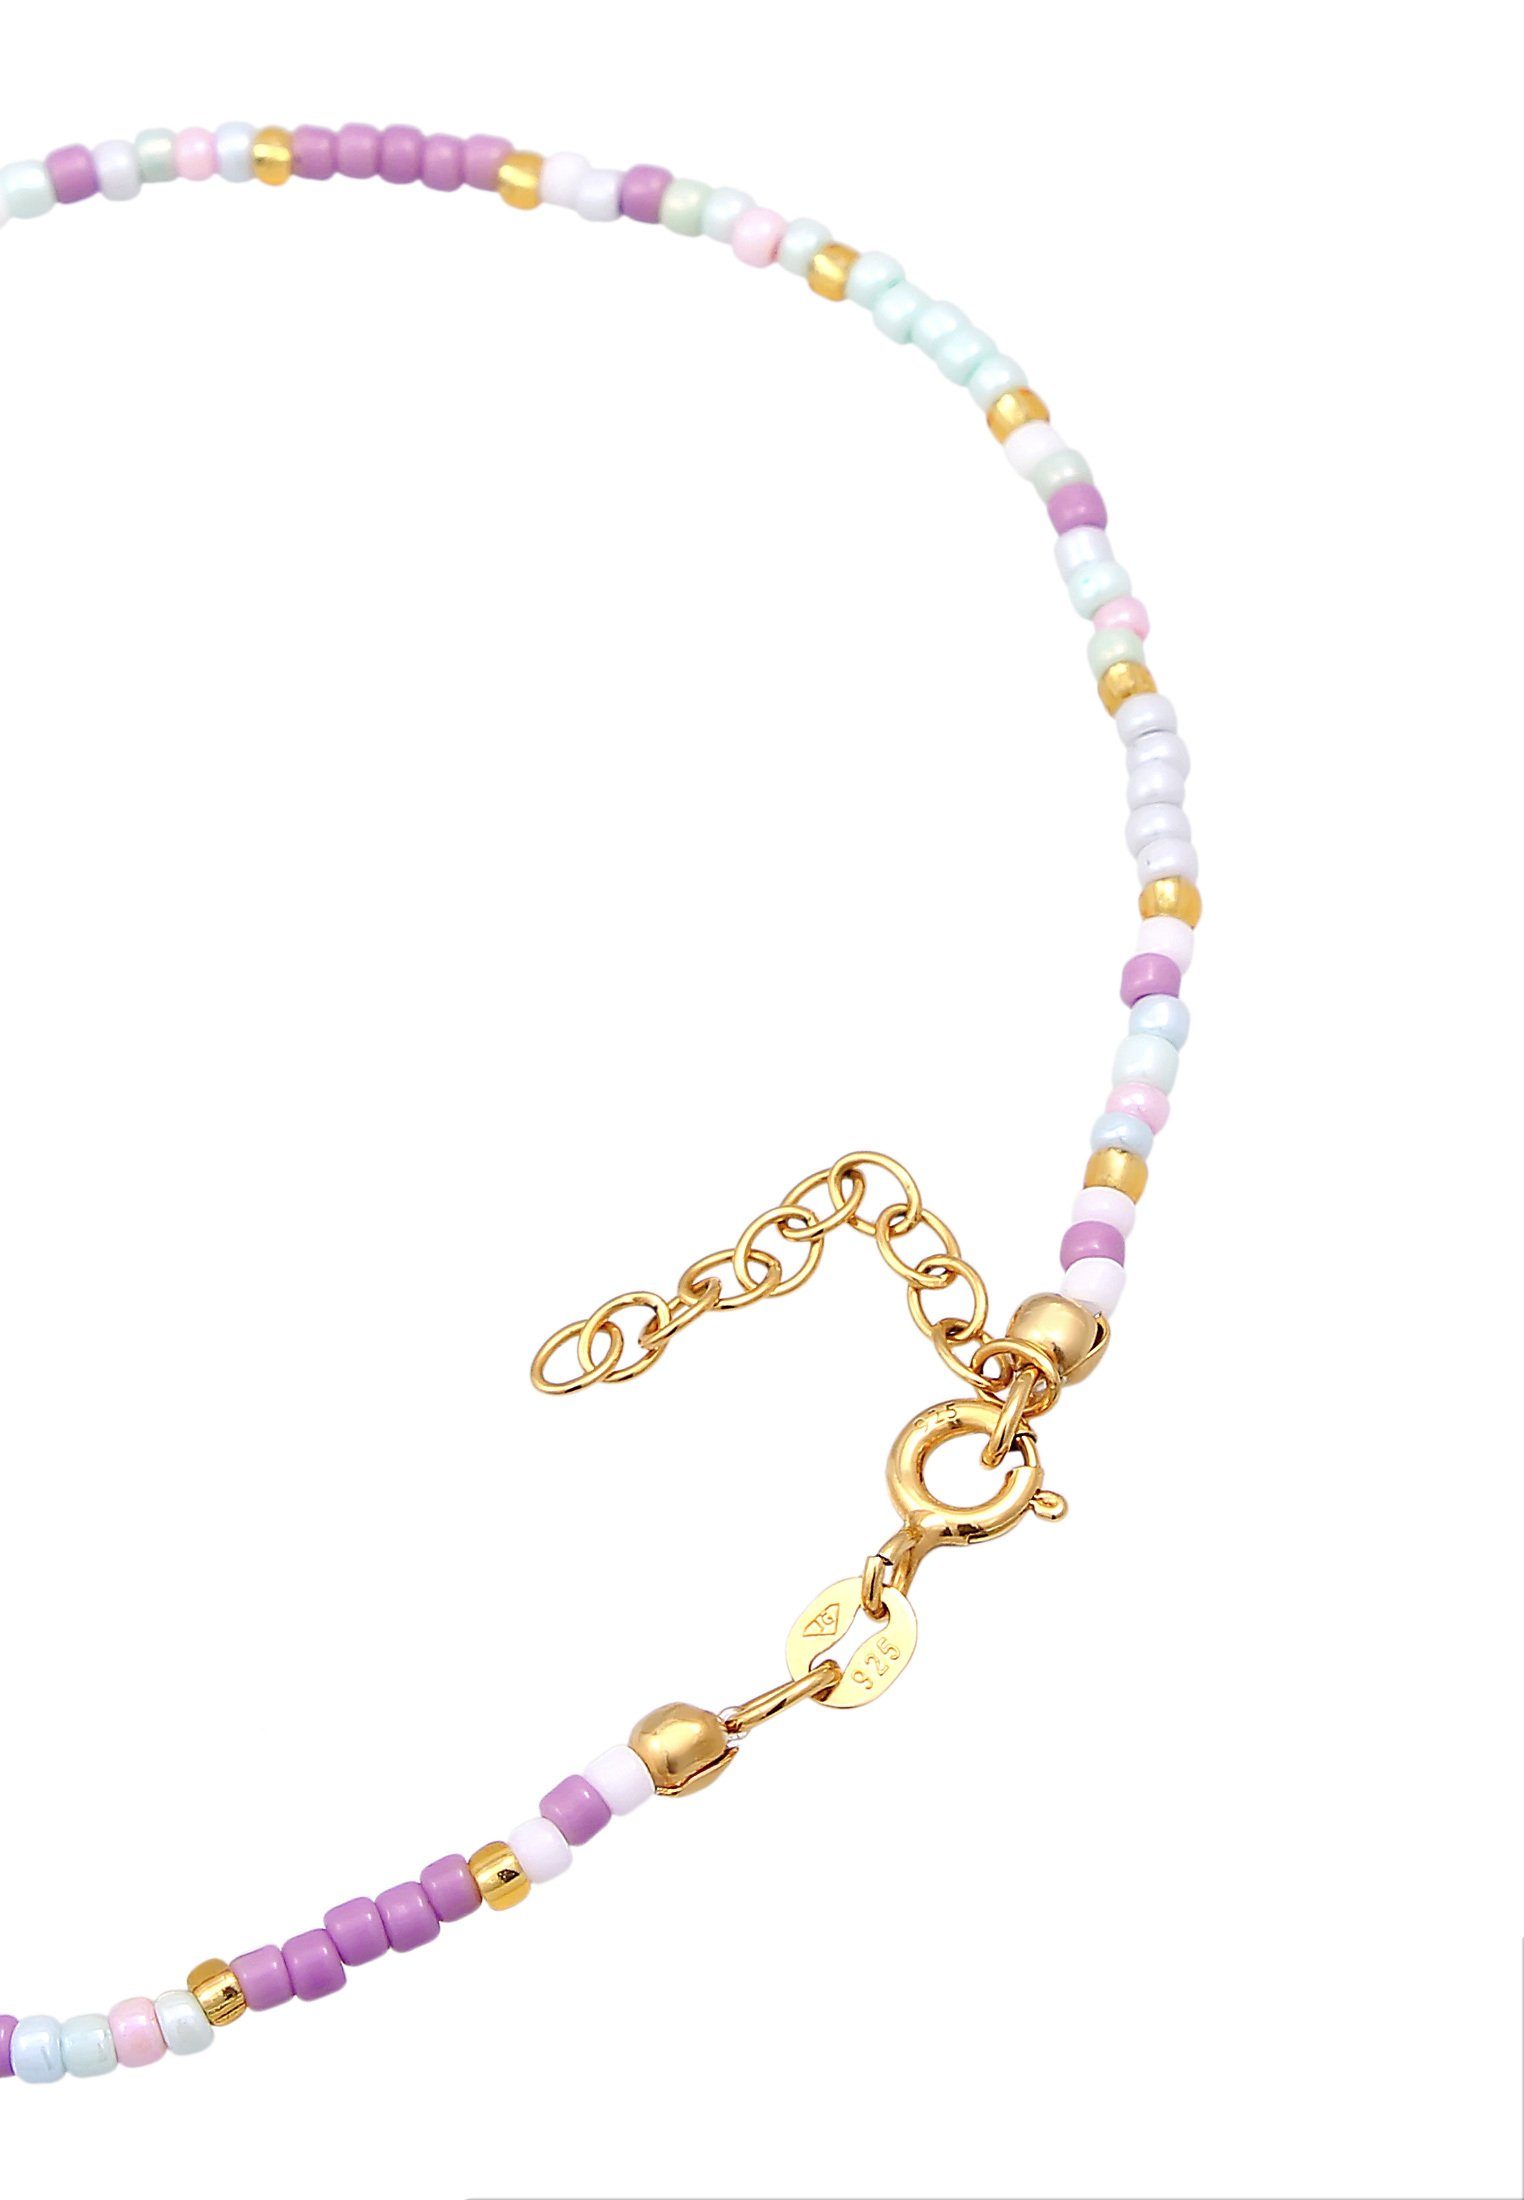 Fußkette Glas Herz Silber Beads Elli Sommer 925 vergoldet Style